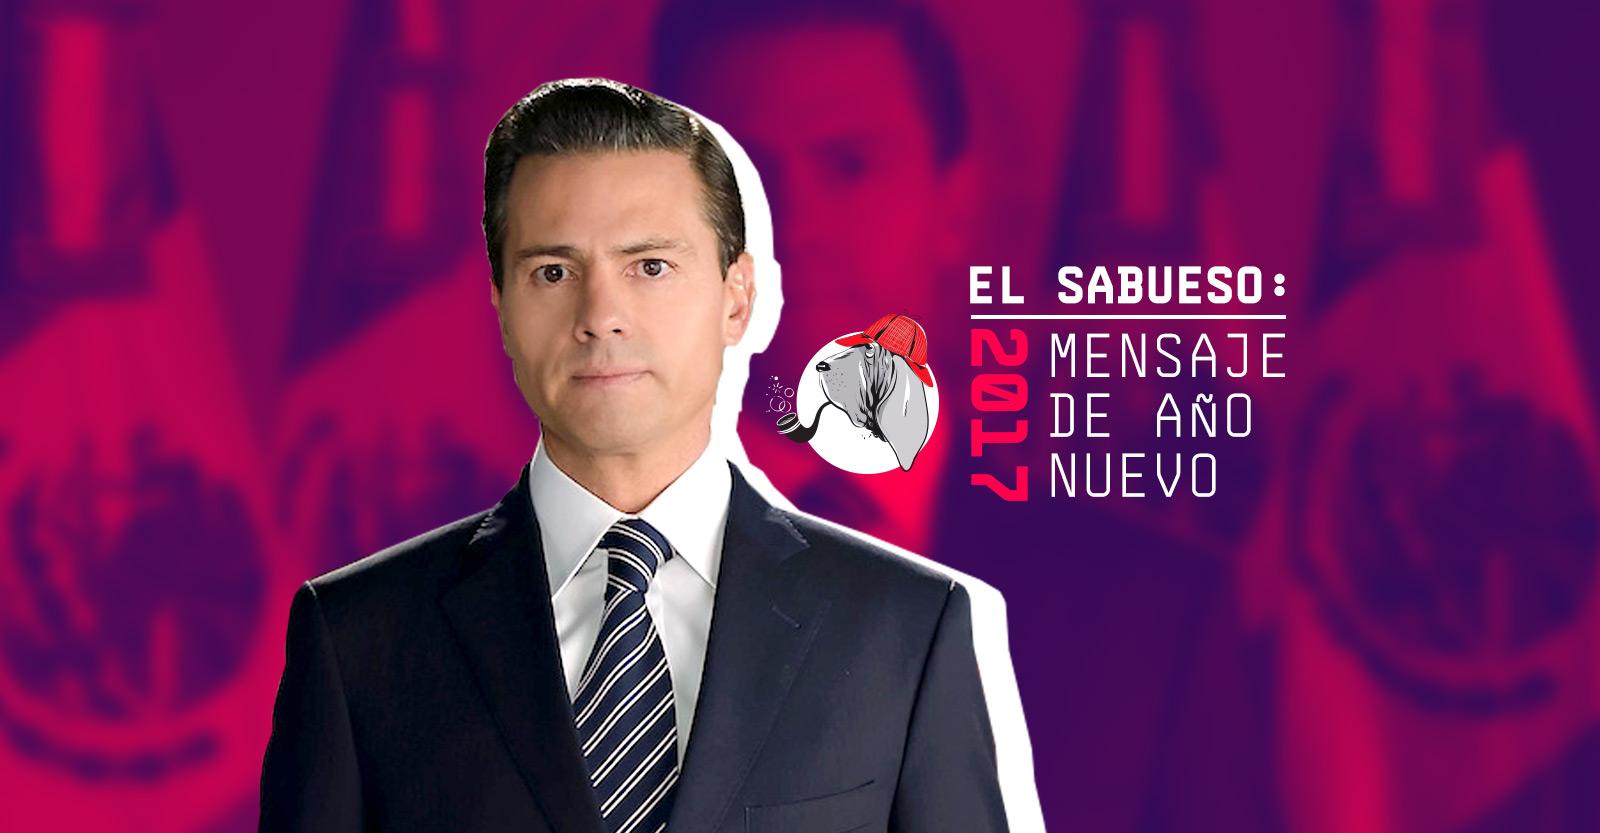 Más mentiras que verdades: El Sabueso olfatea el mensaje de Año Nuevo de Peña Nieto